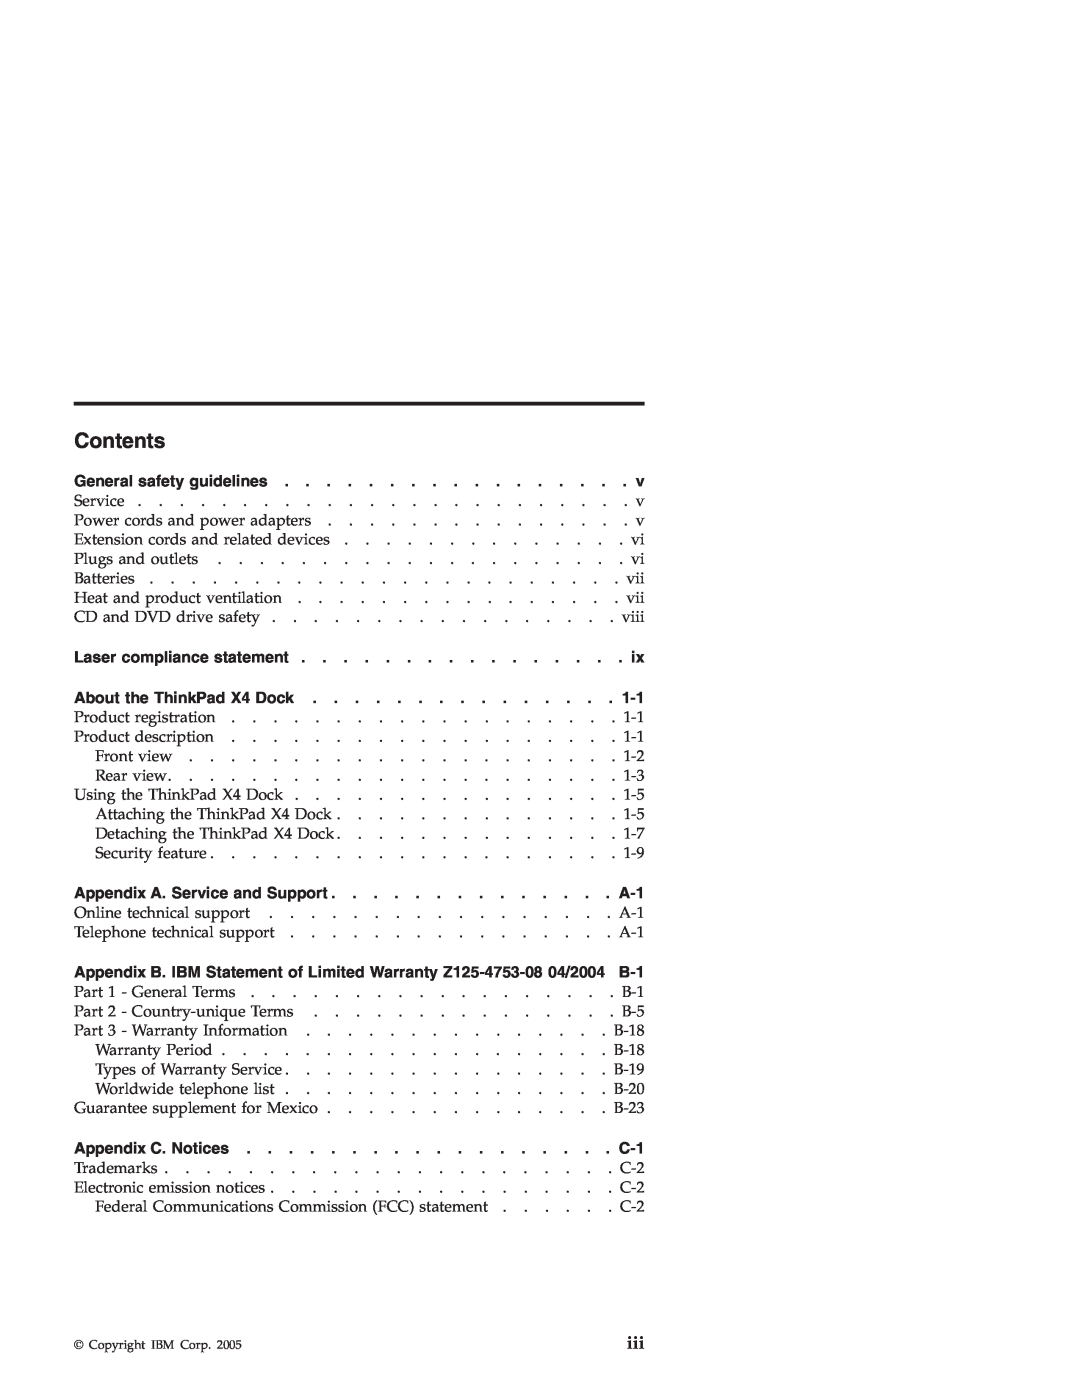 IBM X4 manual Contents 